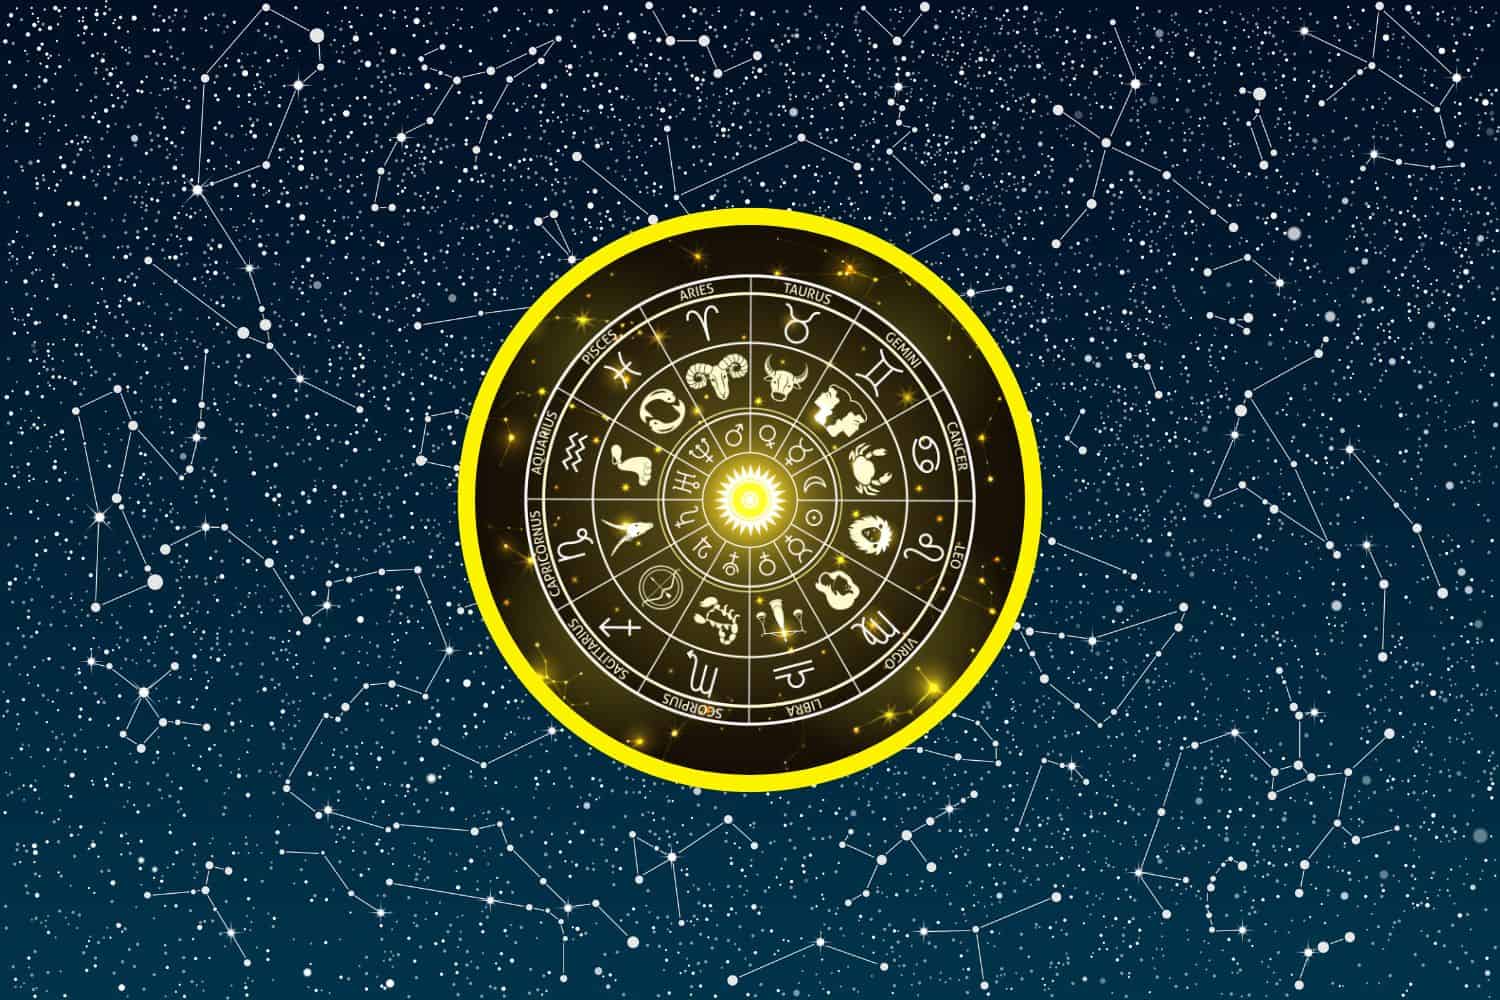 Today’s Free Horoscopes Tuesday 10 January 2023